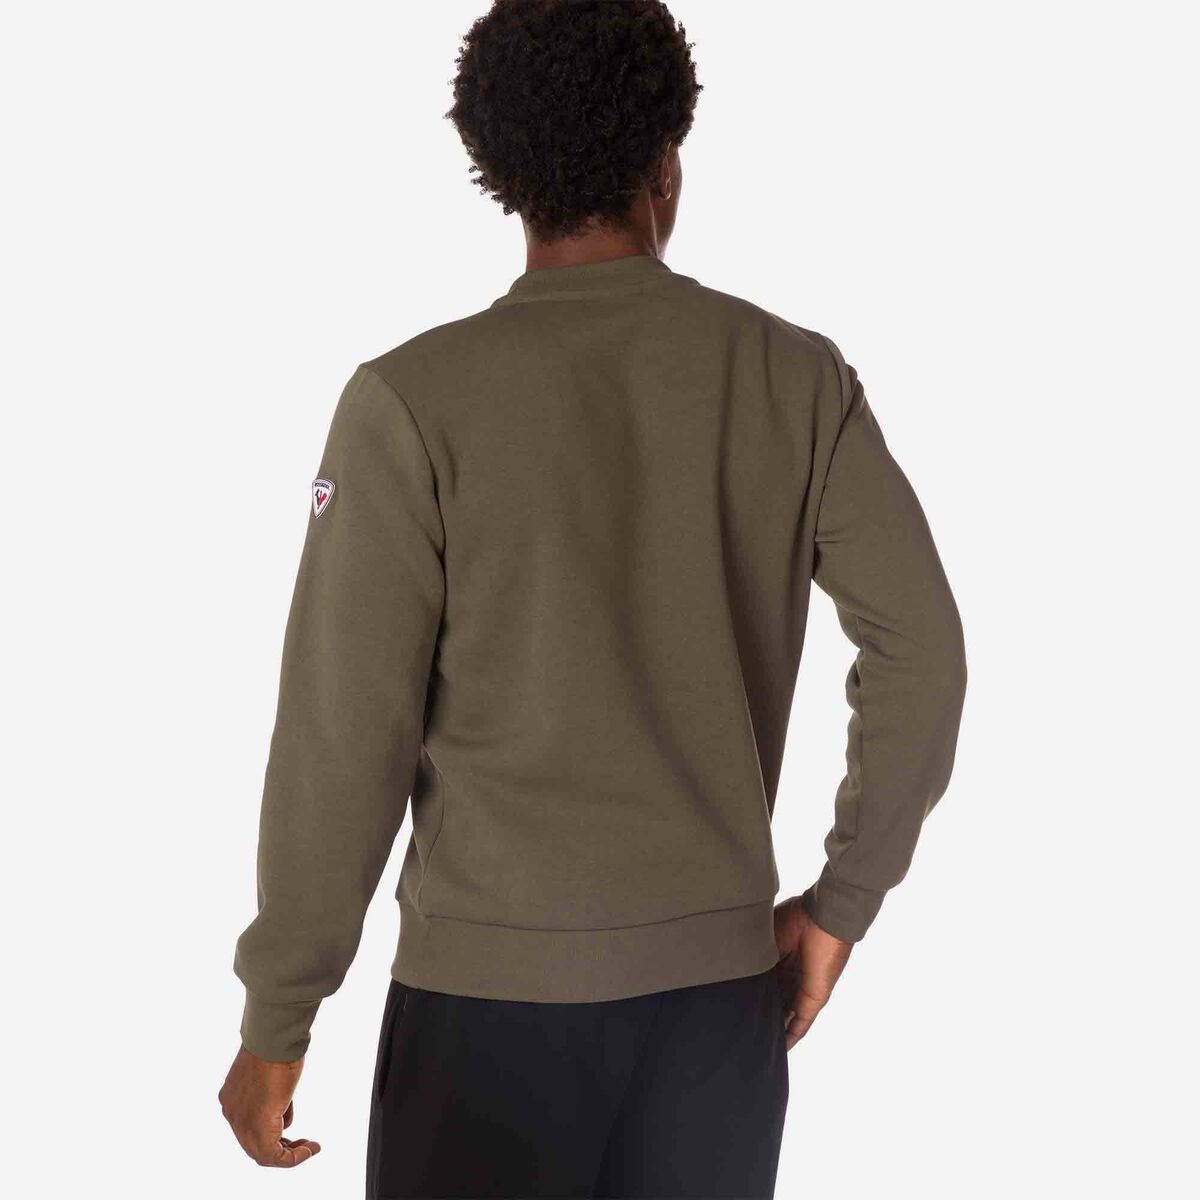 Men's logo fleece sweatshirt round neck